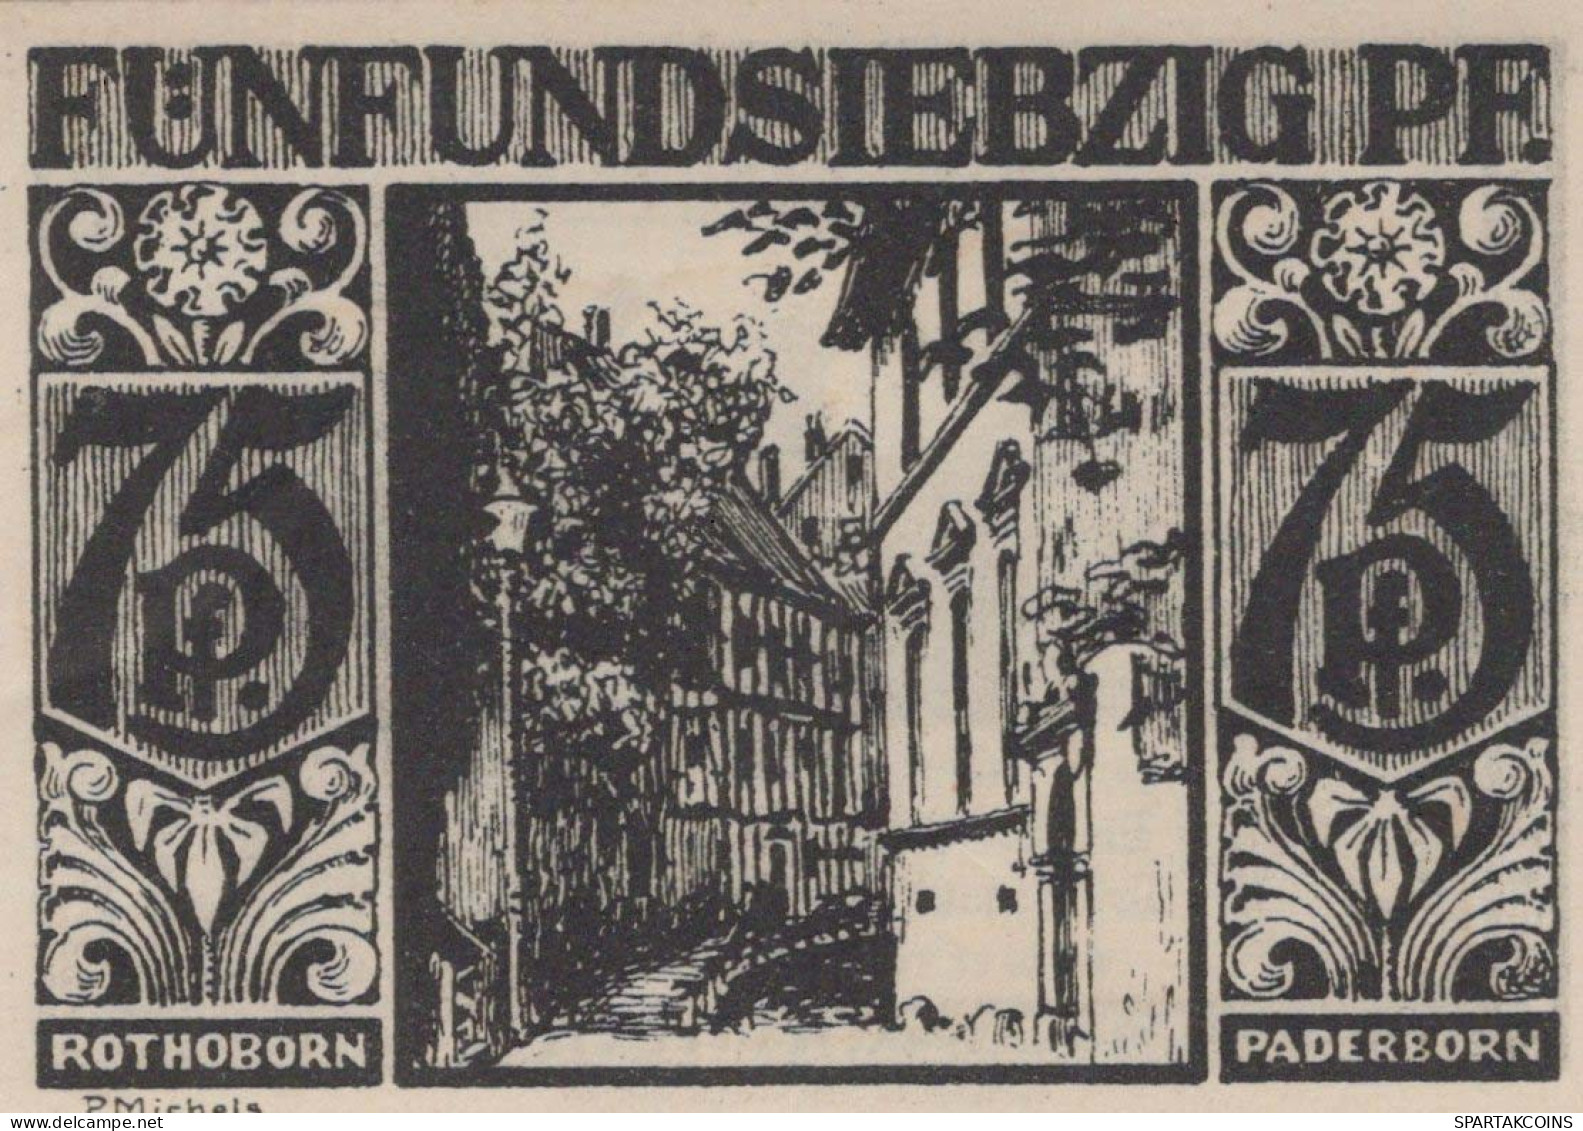 75 PFENNIG 1921 Stadt PADERBORN Westphalia UNC DEUTSCHLAND Notgeld #PB453 - Lokale Ausgaben